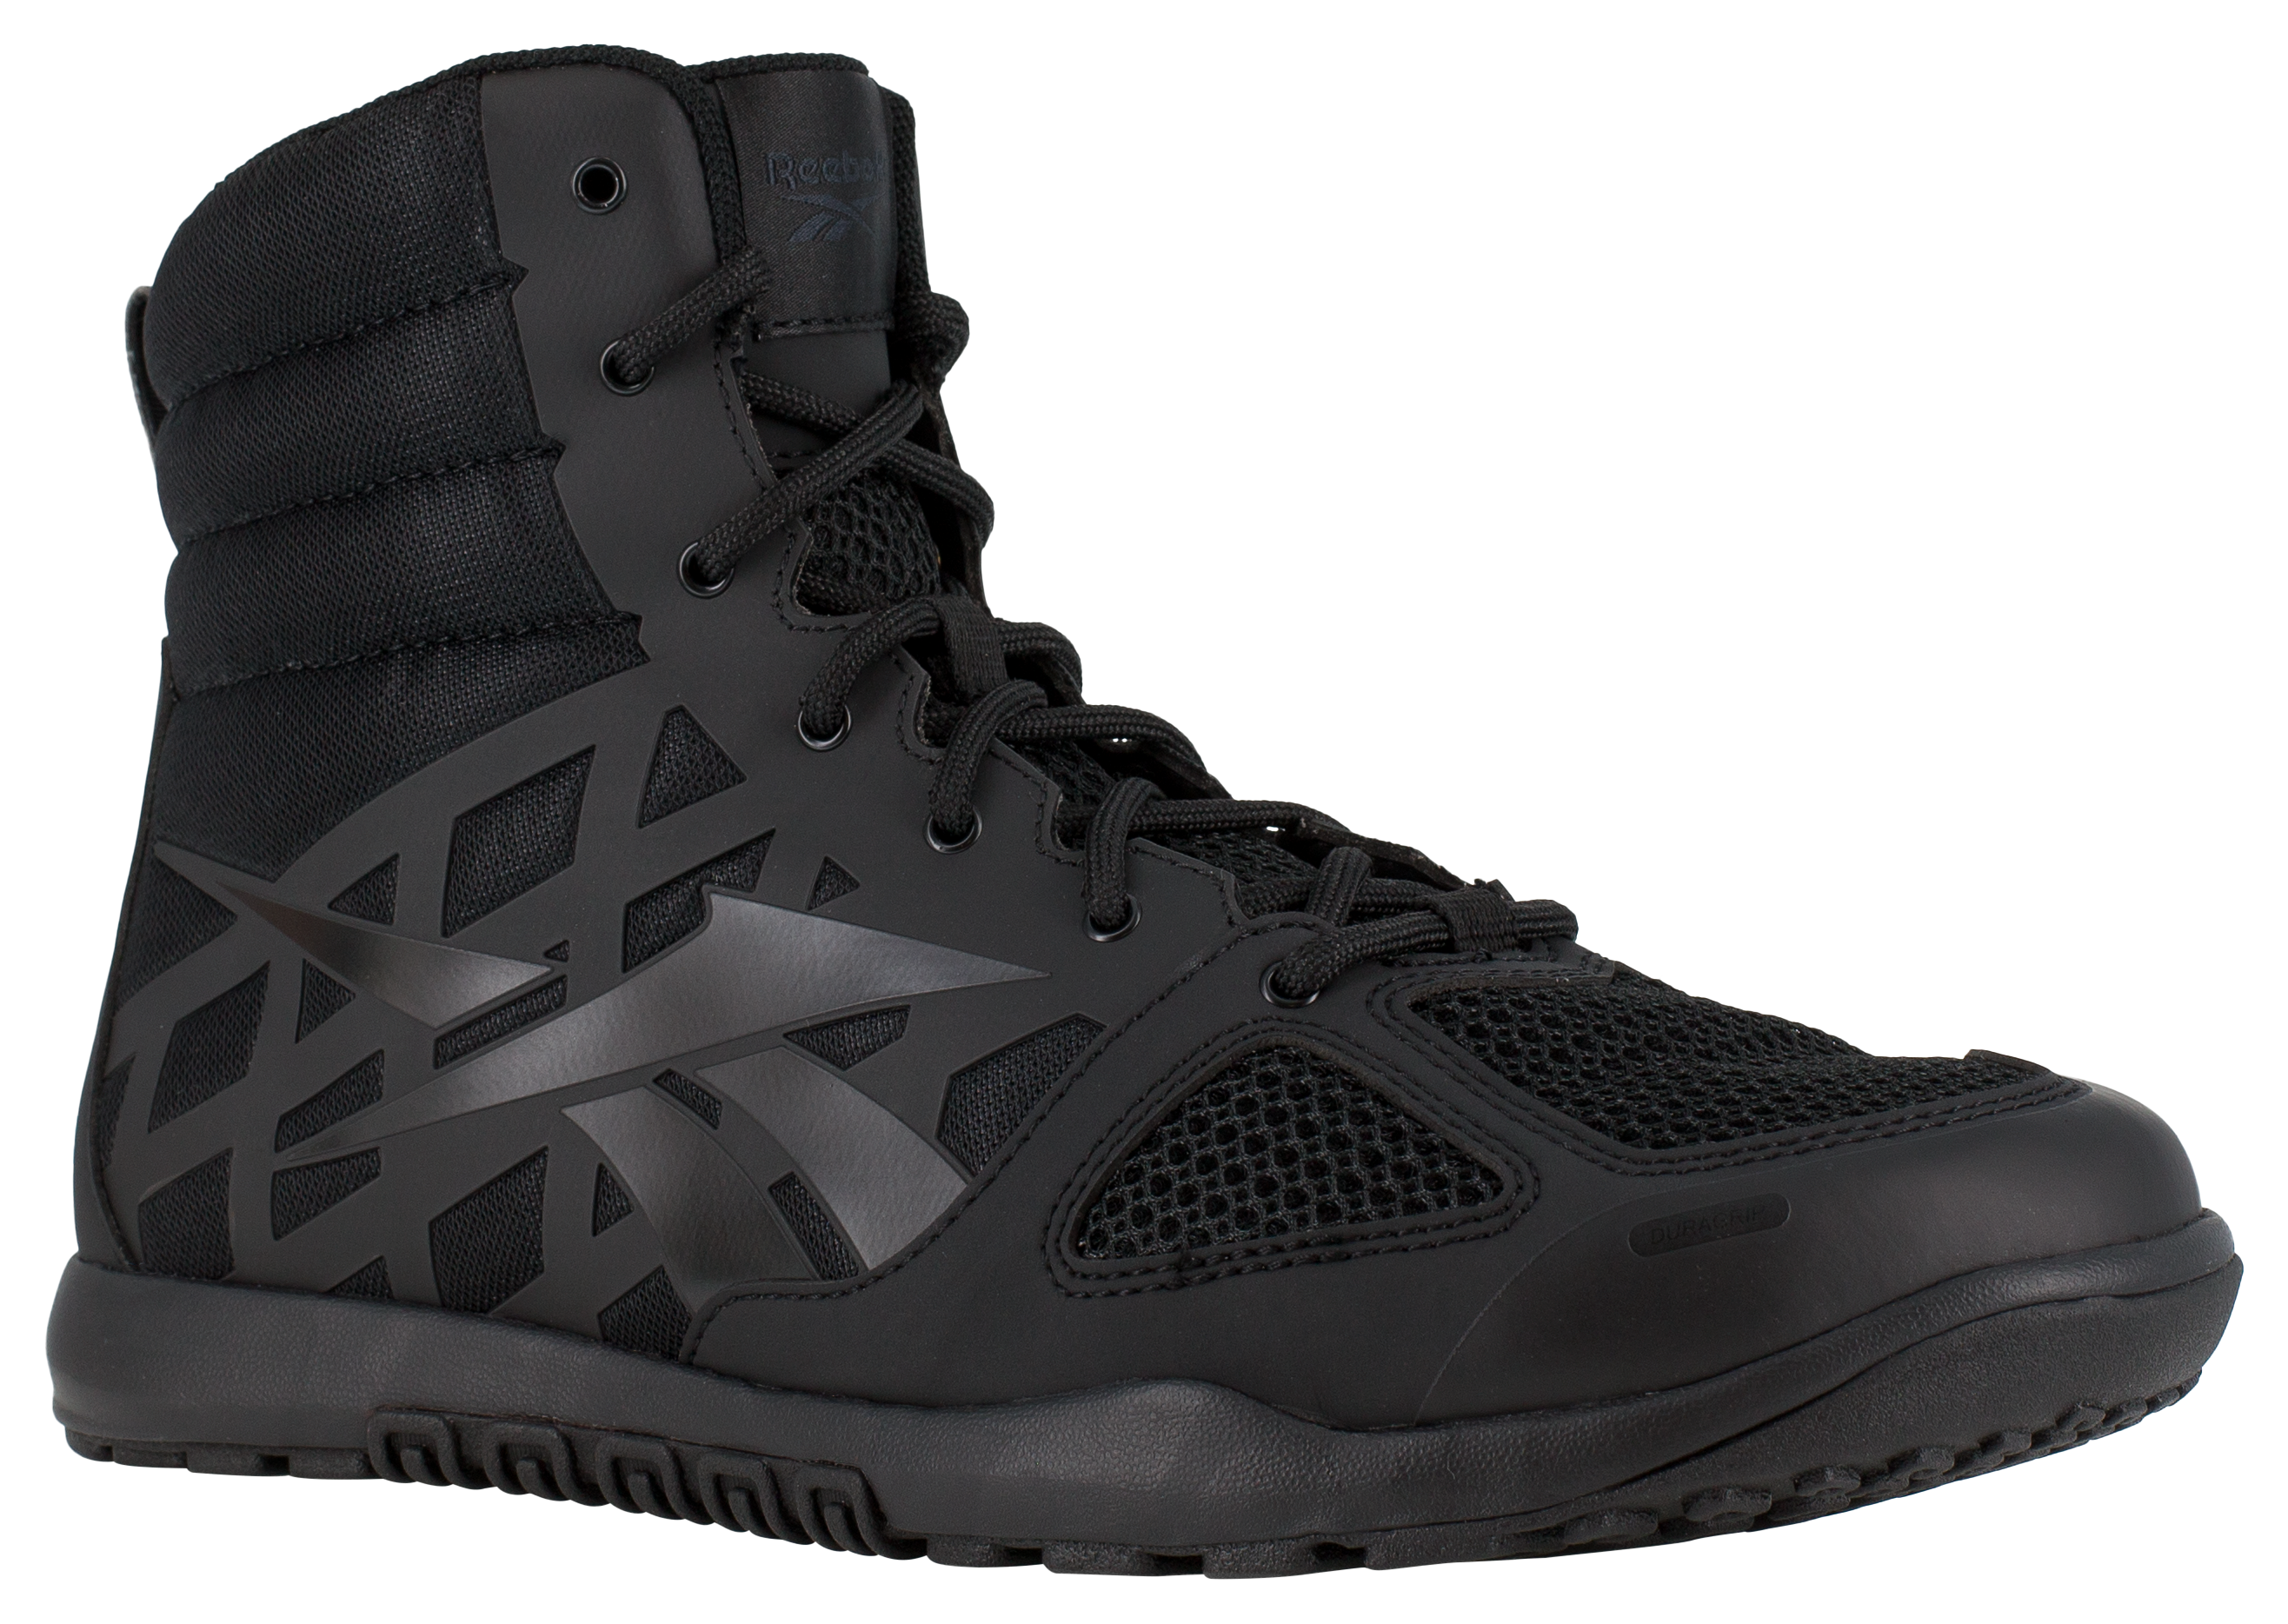 Reebok Nano Tactical 6″ Tactical Boots for Men - Black - 10.5M